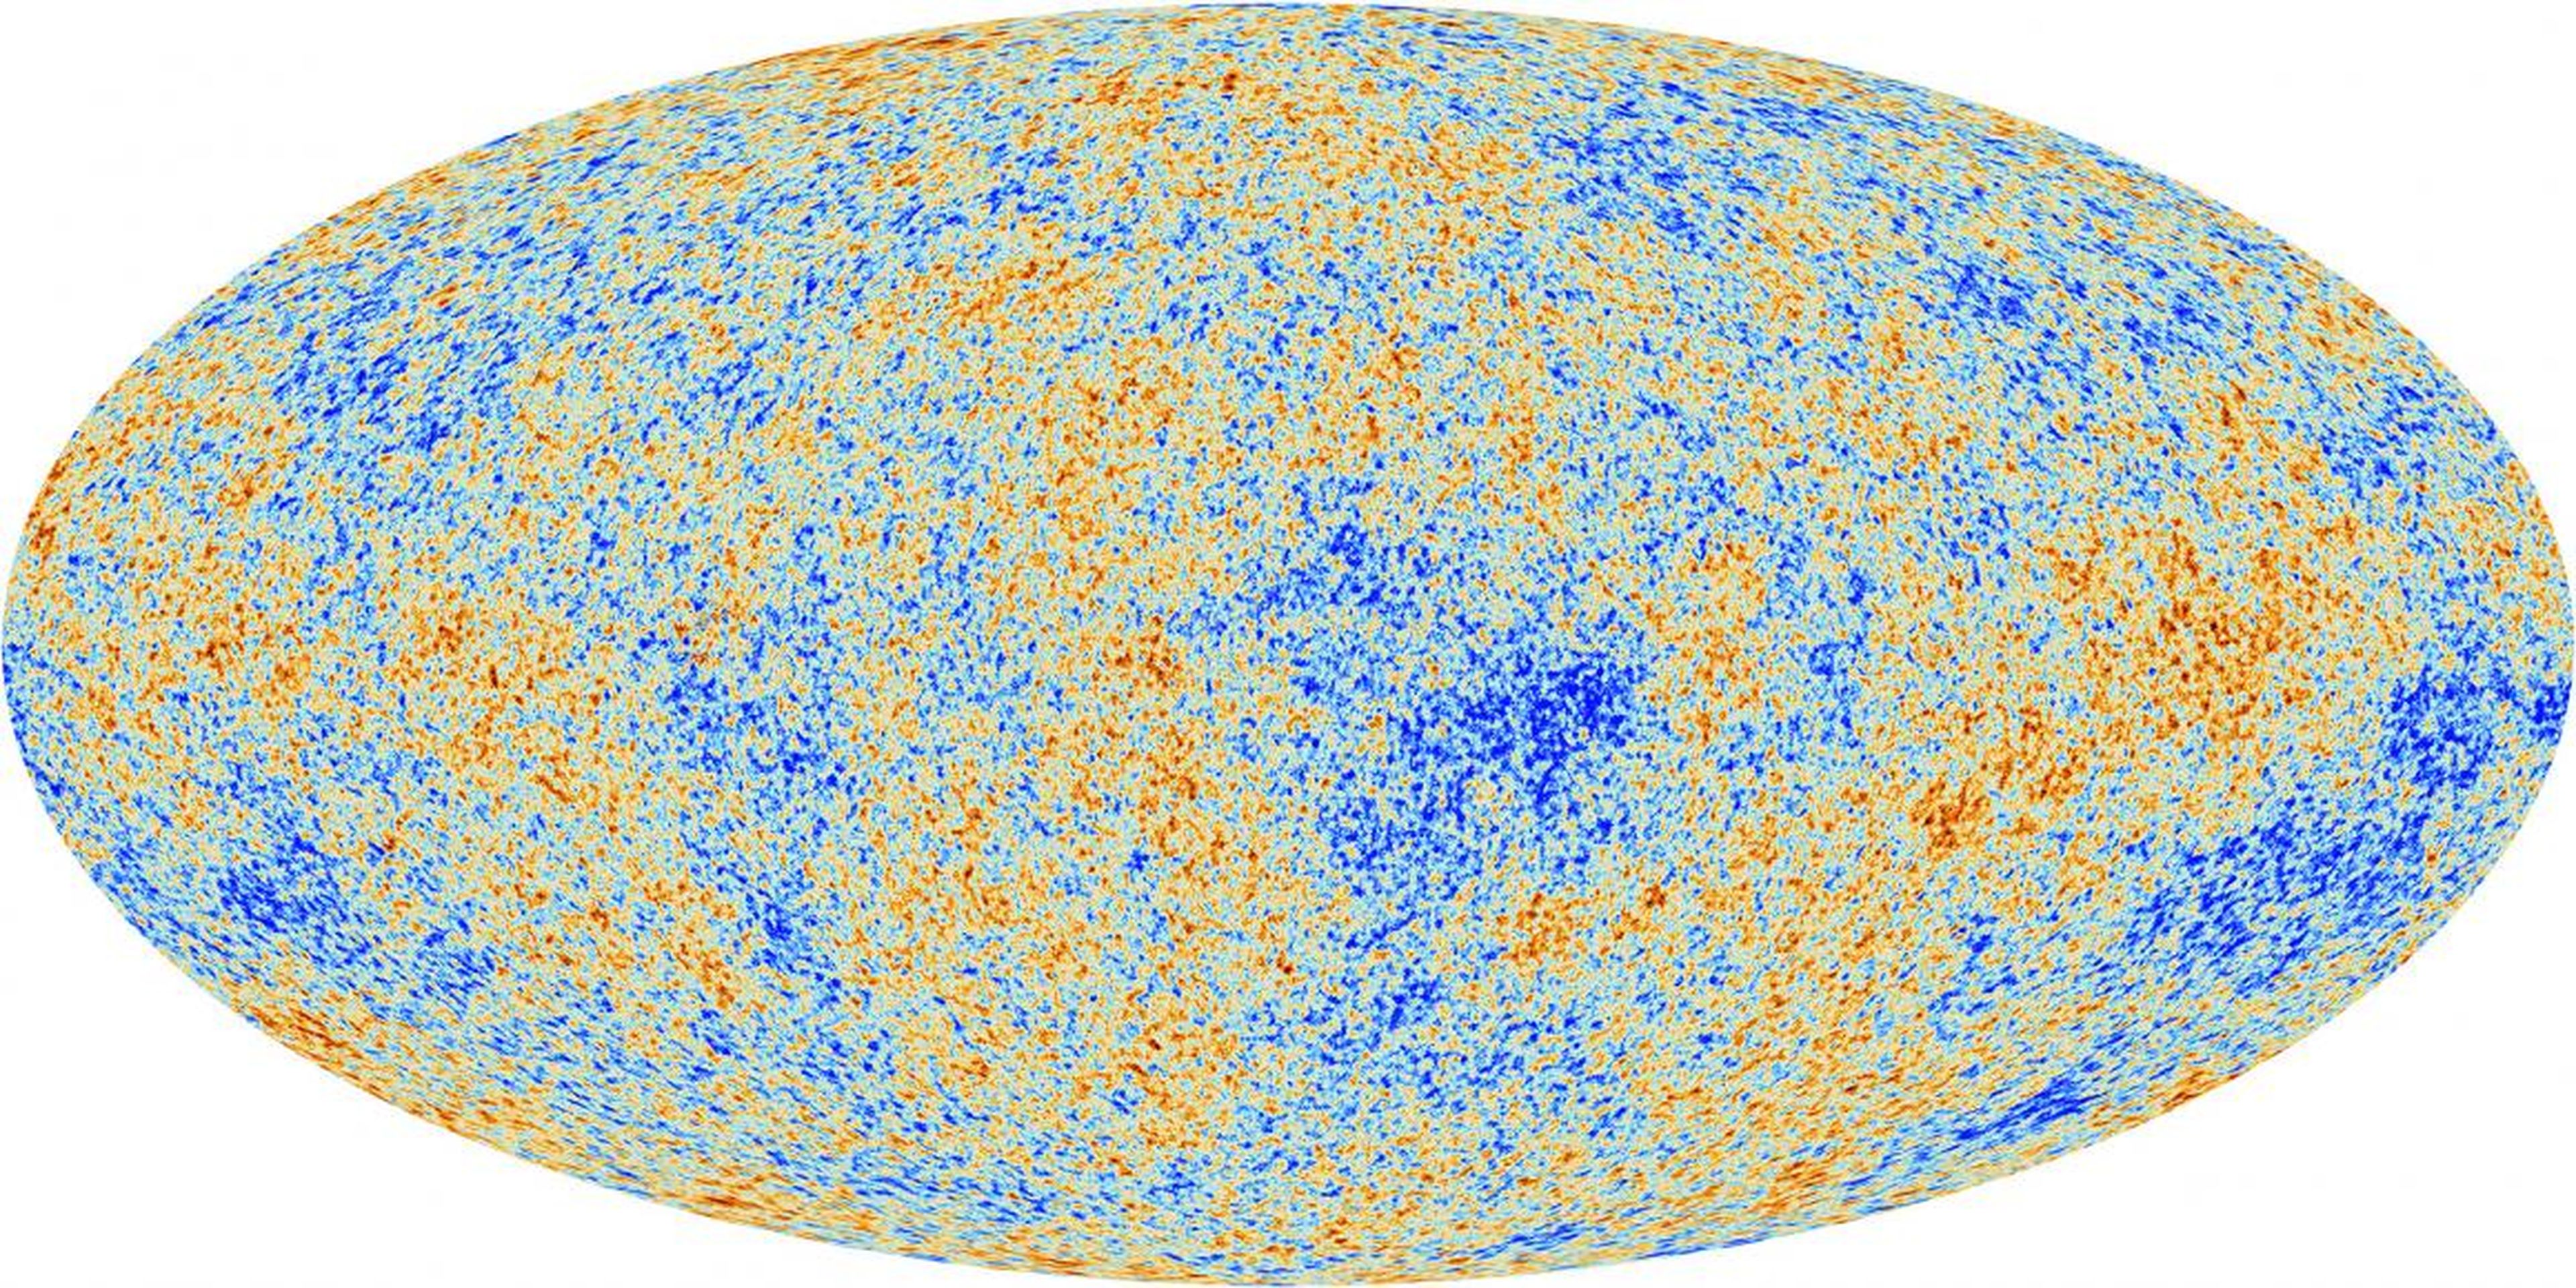 La luz más antigua del universo, llamada fondo cósmico de microondas, tal y como la observa el telescopio espacial Planck.